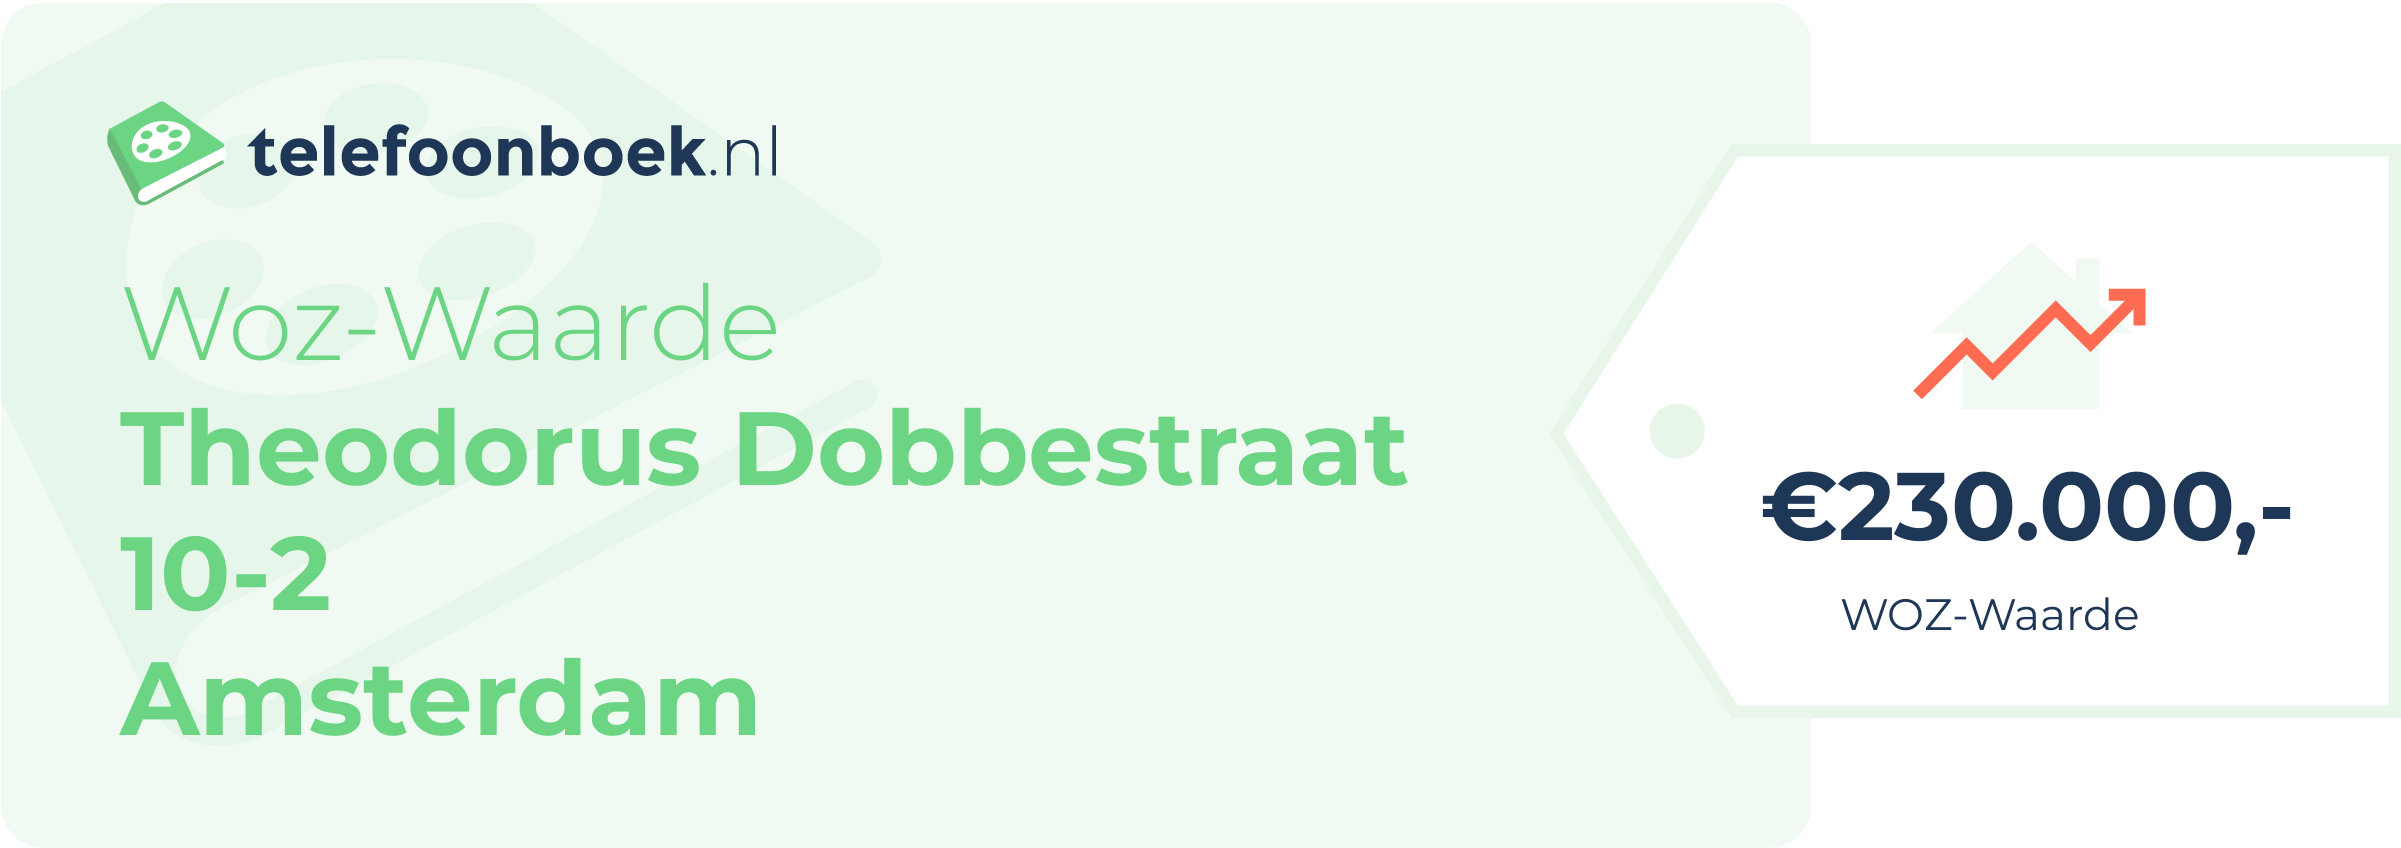 WOZ-waarde Theodorus Dobbestraat 10-2 Amsterdam